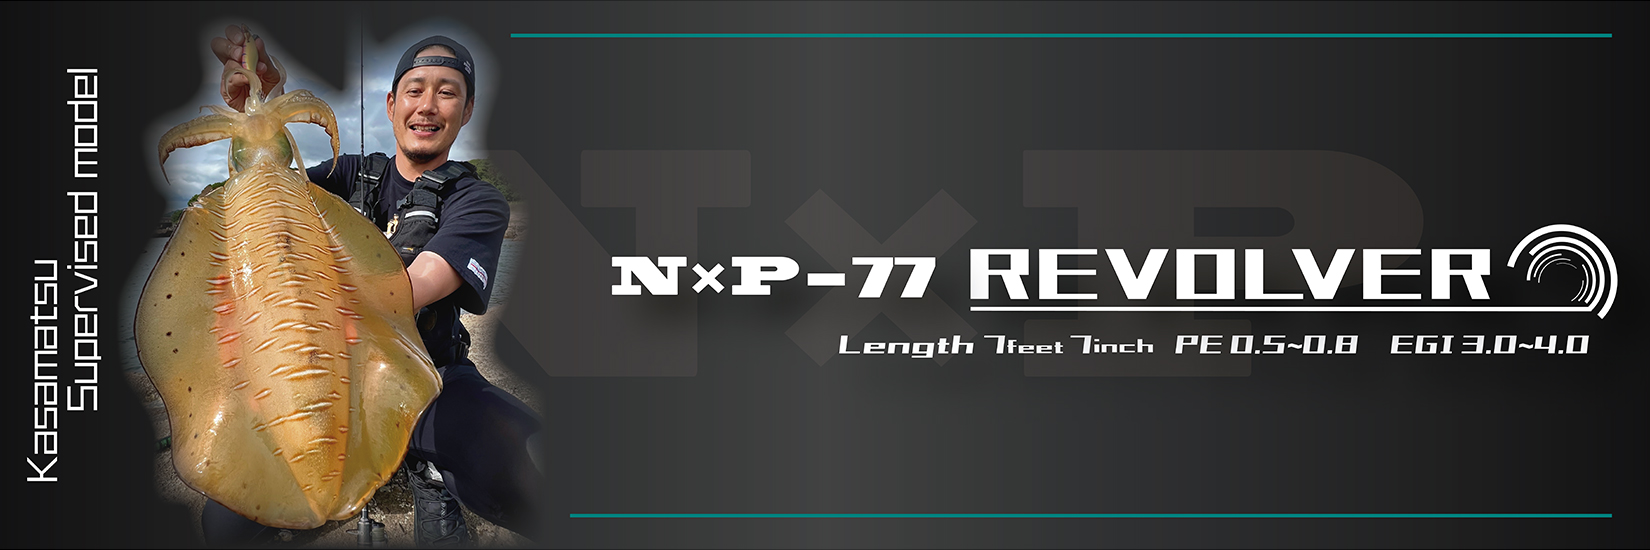 N×P−77_main